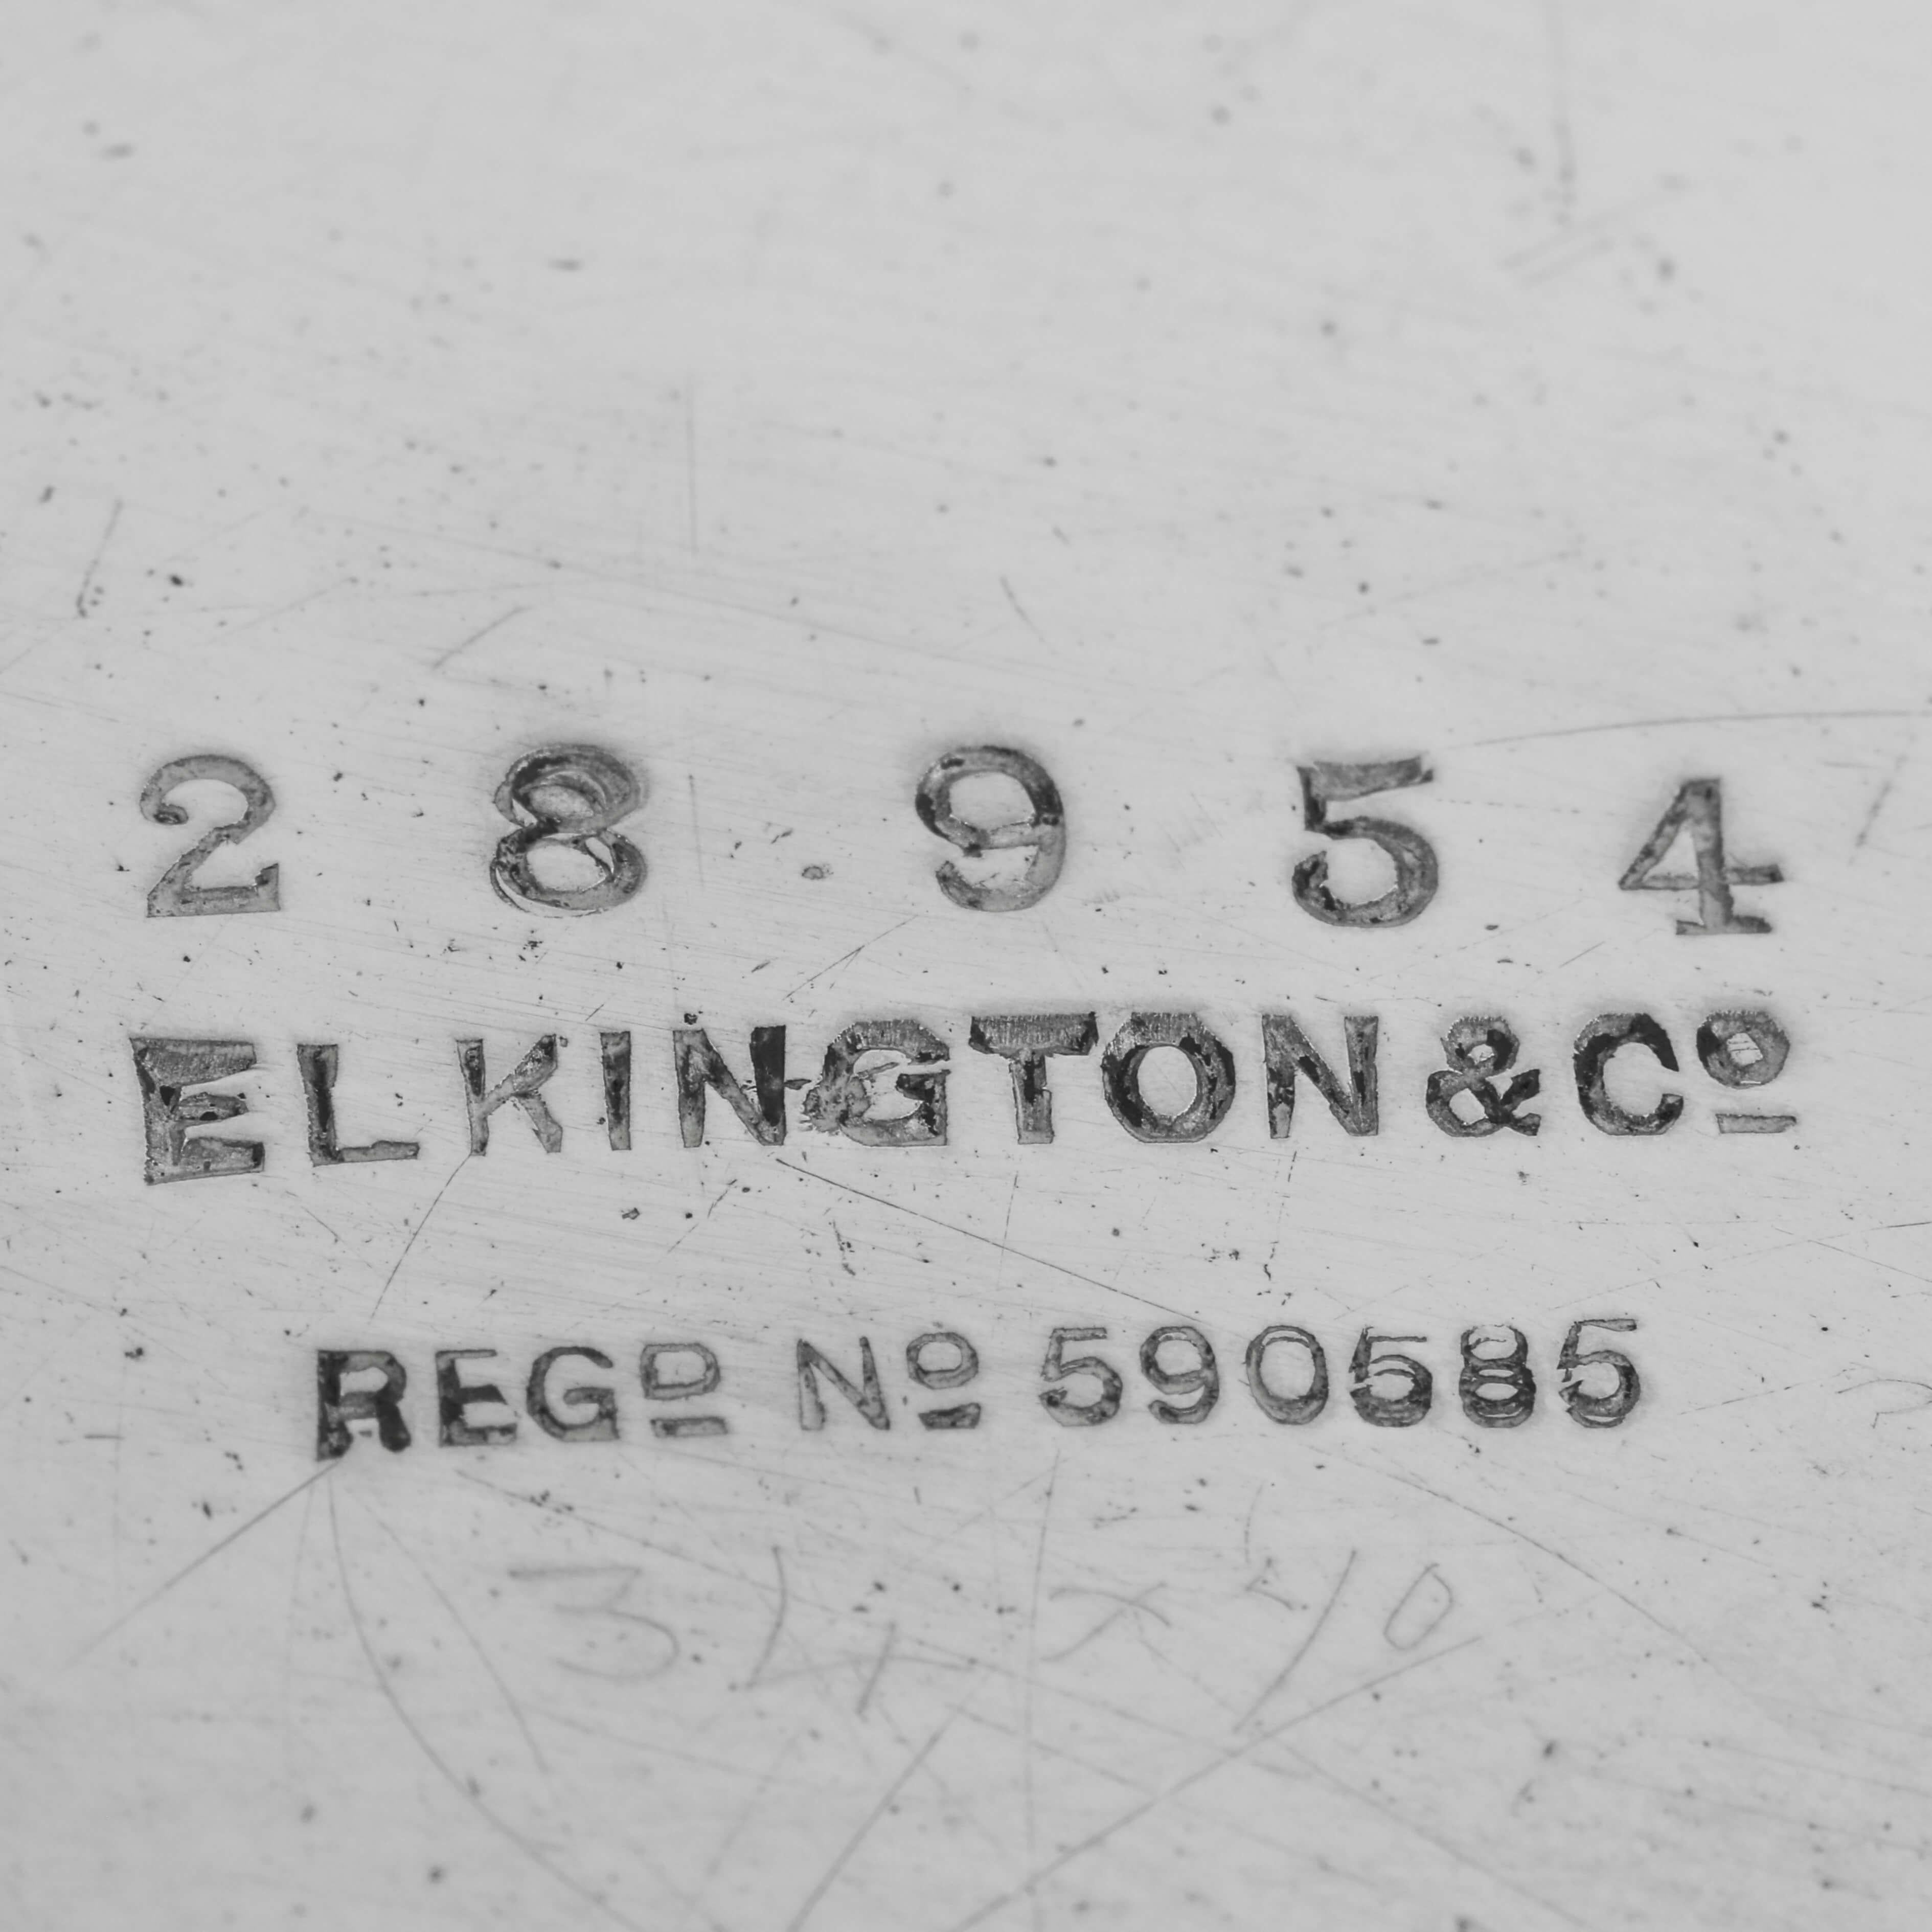 Diese attraktive antike Sterling-Silber-Epergne wurde 1910 in Birmingham von Elkington & Co. gepunzt und ist eine schöne Reproduktion eines neoklassischen Designs aus der Zeit von George II. mit 4 abnehmbaren runden Beilagen und einem größeren